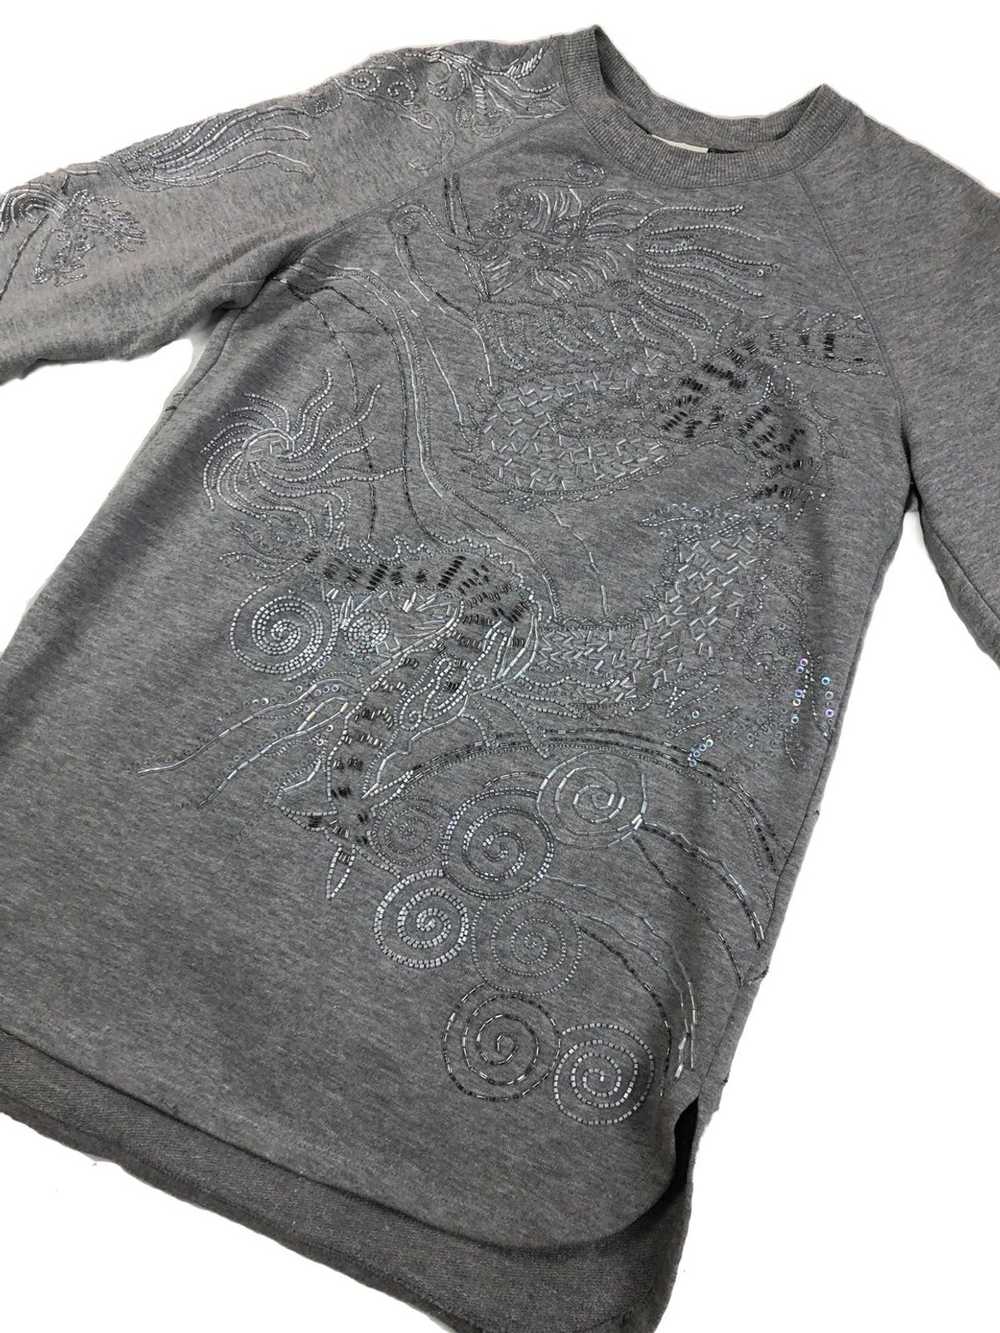 Dries Van Noten Embellished sweatshirt - image 3